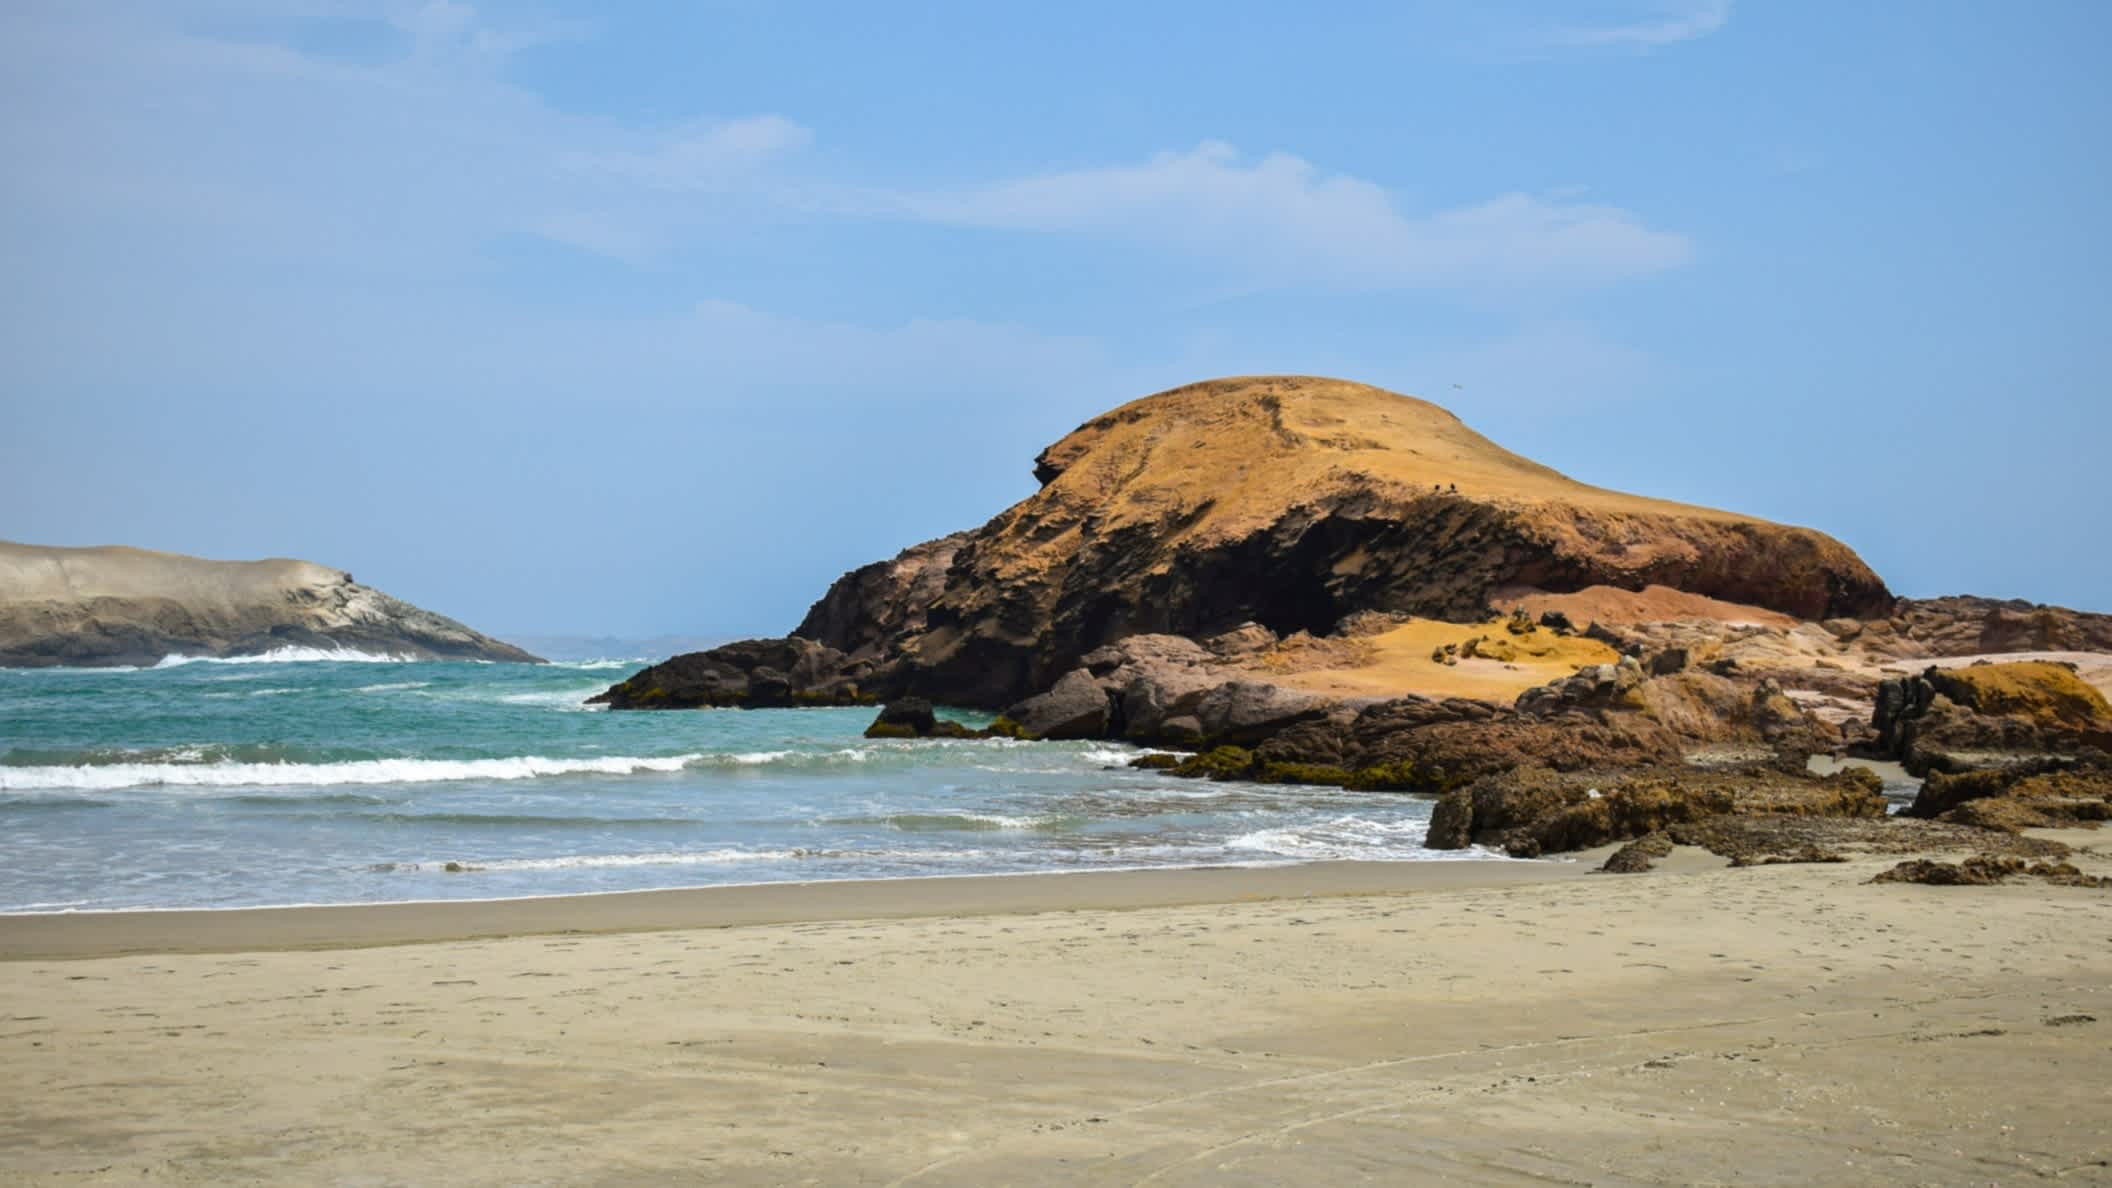 Der Strand Peru Caleta in San José, Peru mit Felsen im Bild, dem blauen Himmel sowie Meer.